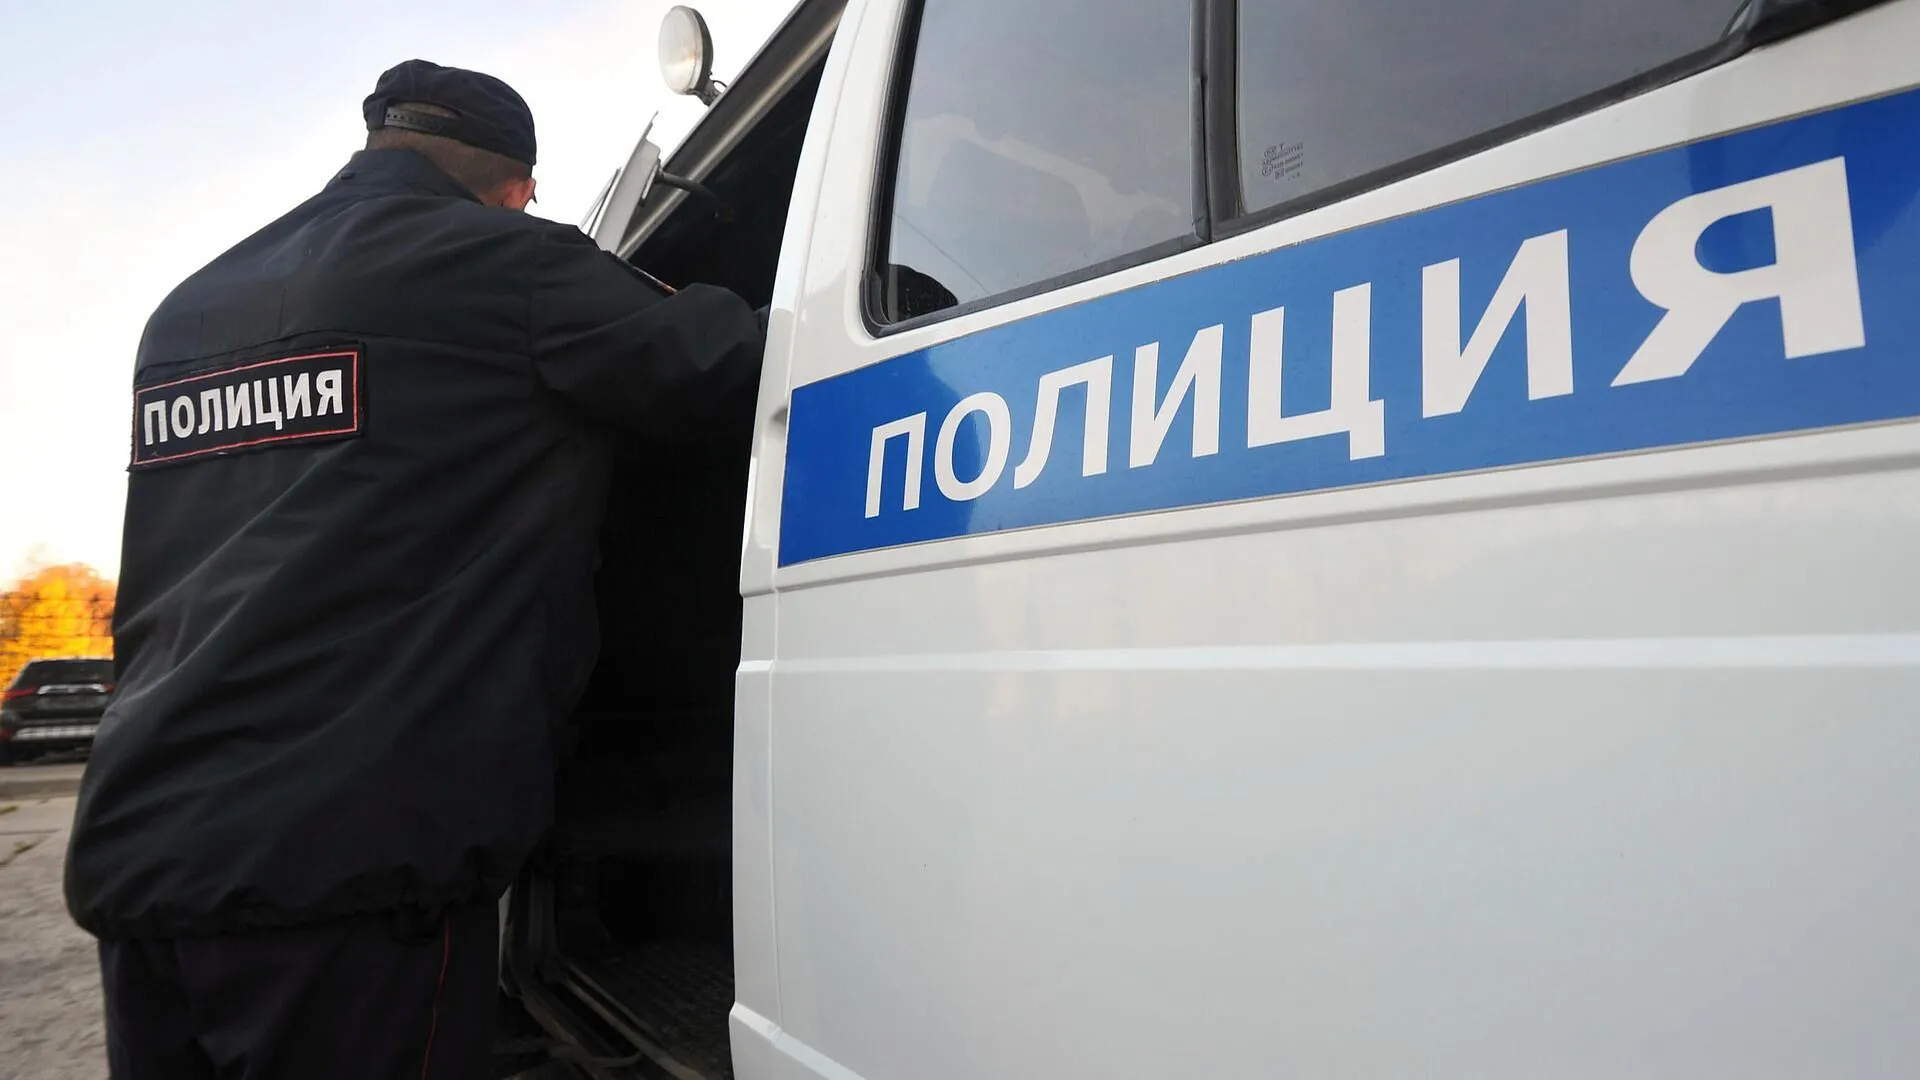 Марат Клубника назвал причину ареста в Казани